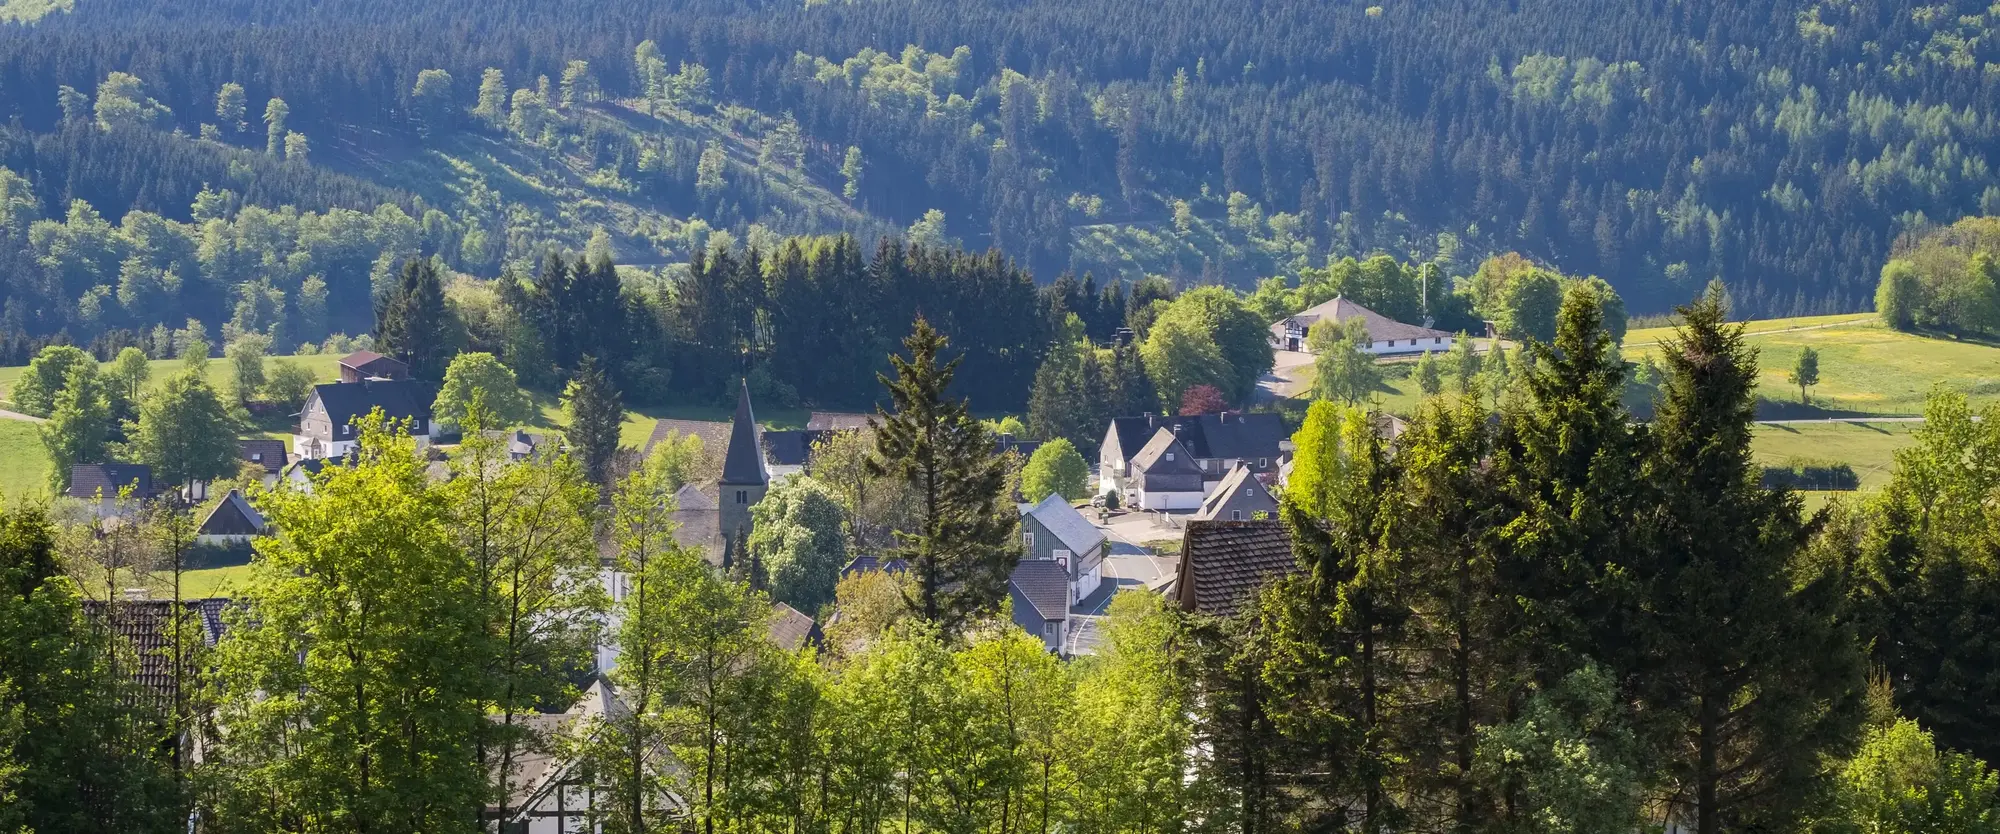 Ein Teil der Ortschaft Neuastenberg inmitten von Wäldern und Wiesen.